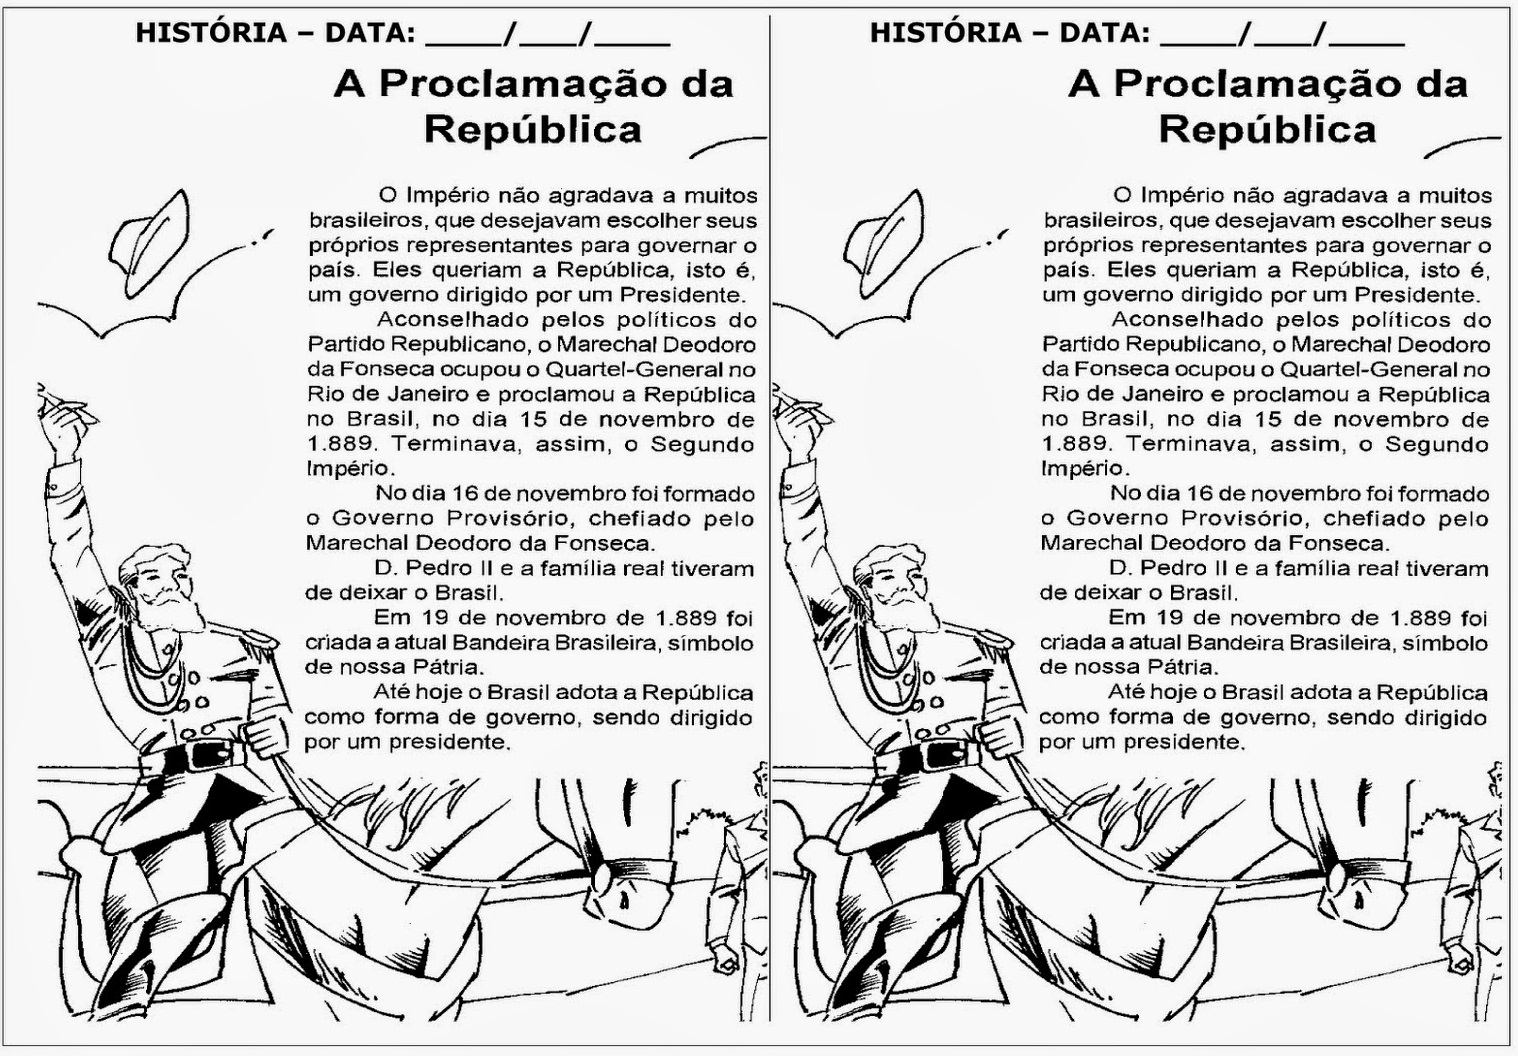 Proclamação da Republica - Texto e Atividades - 15 de Novembro.